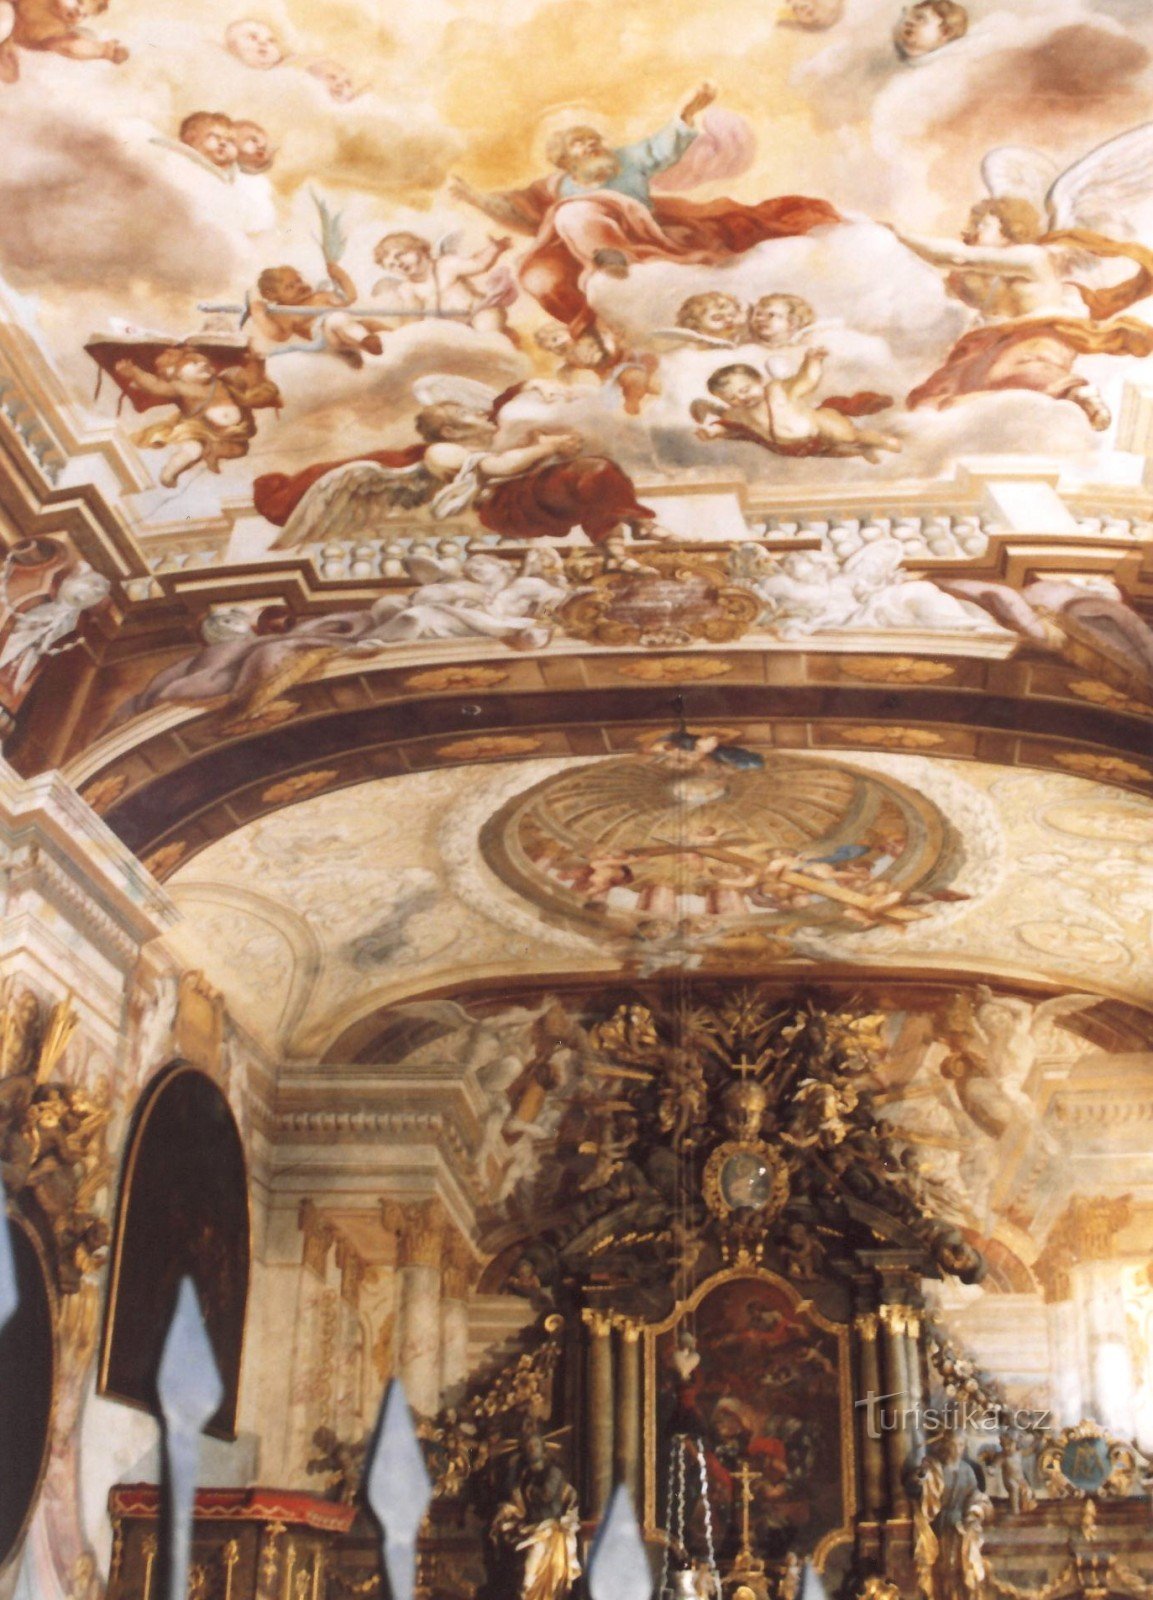 Pernštejn – Pyhän Kristuksen kääntymyksen linnakappeli. Paul